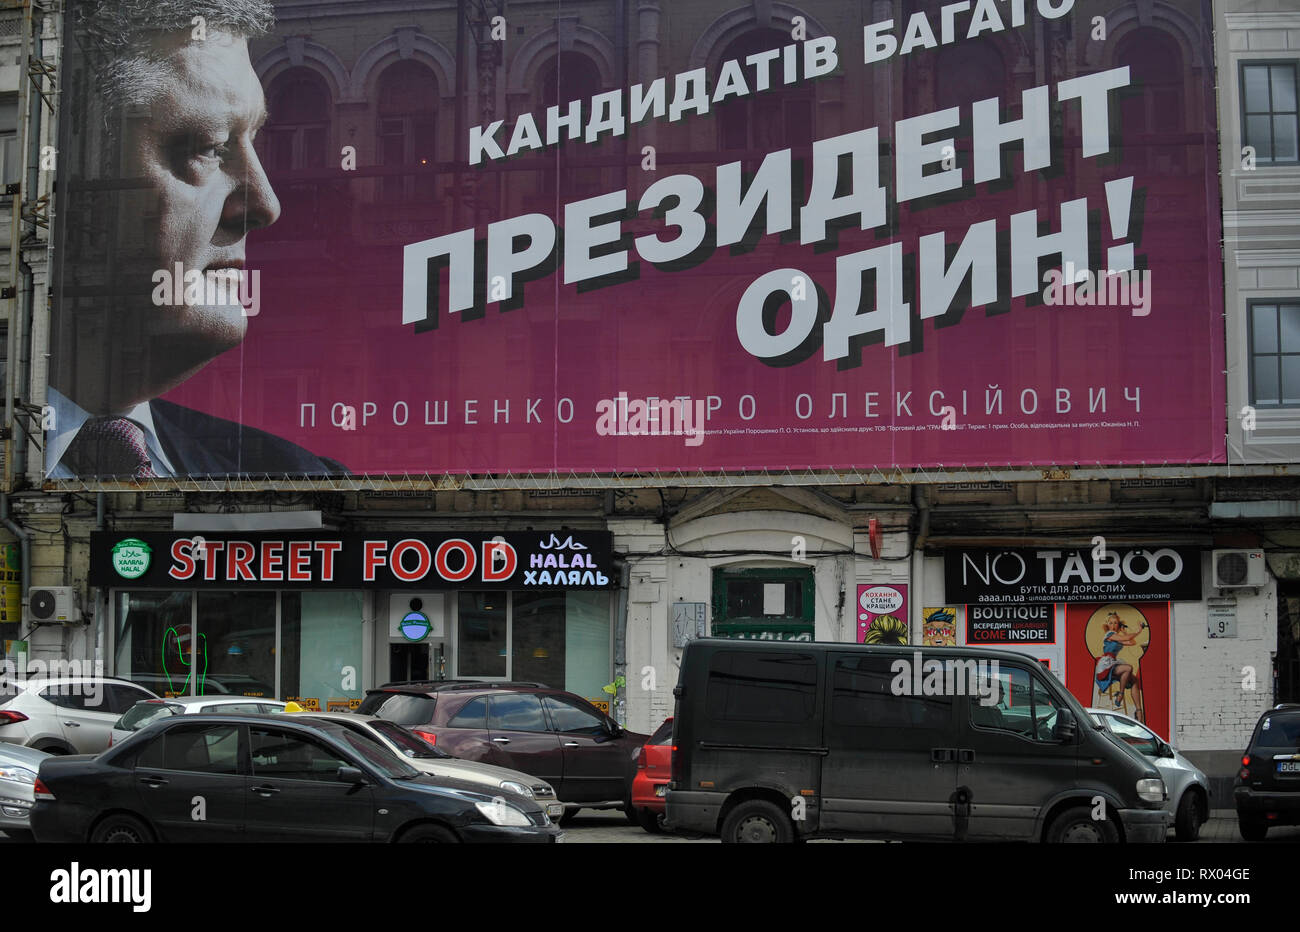 Voitures vues passe par un affichage politique de candidat à la présidence de l'Ukraine, Petro Poroshenko, disant : "Il y a beaucoup de candidats - le président est un !' élections présidentielles en Ukraine aura lieu le 31 mars 2019. Banque D'Images